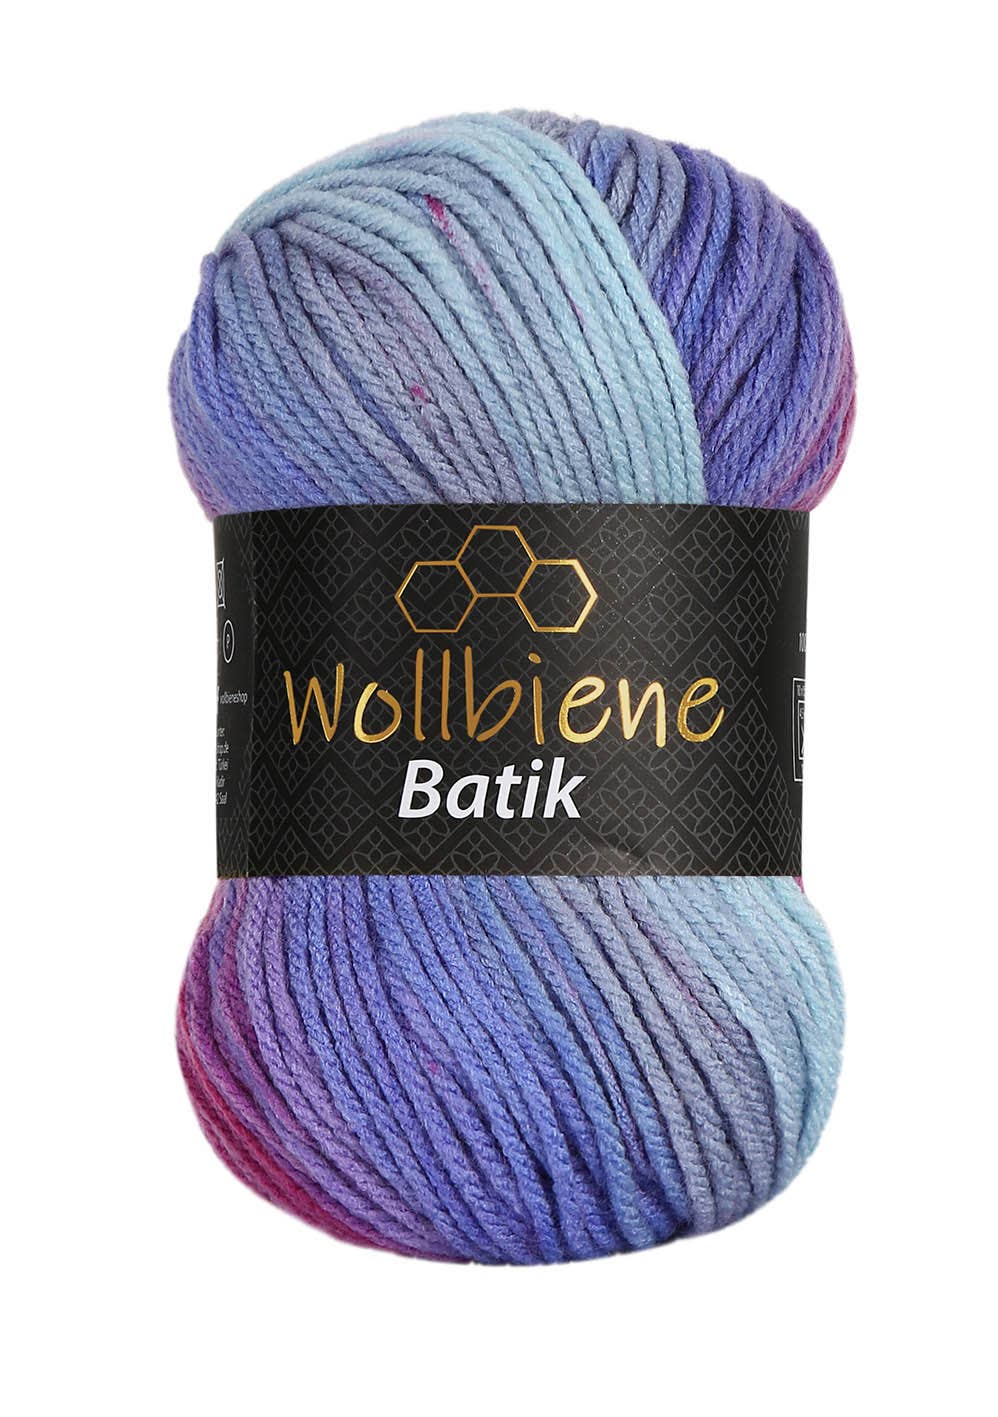 Wollbiene - Wollbiene Batik Farbverlaufswolle Strickwolle